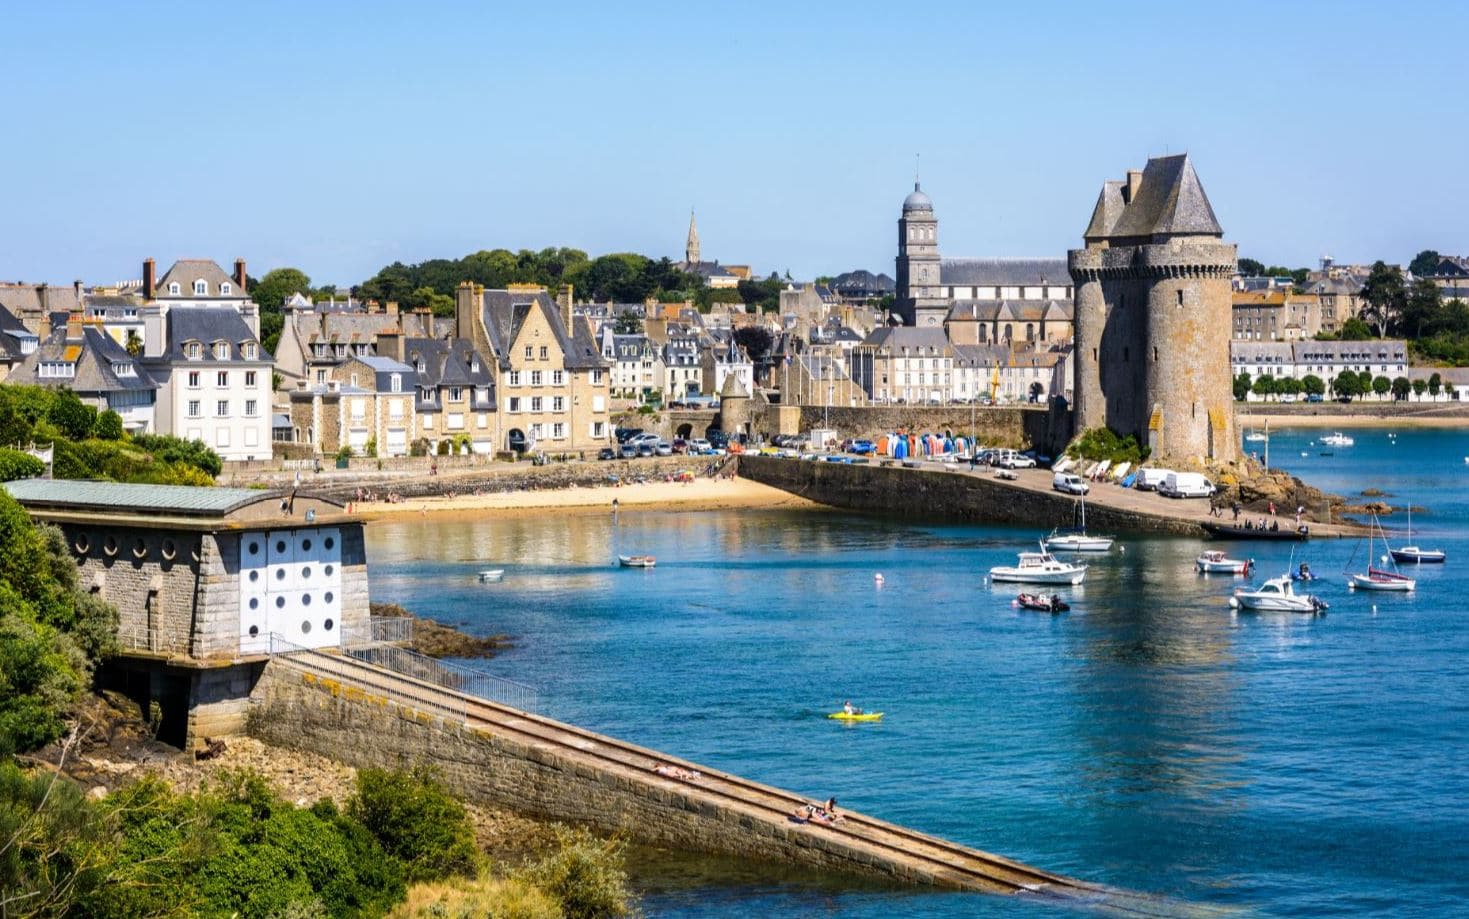 Comment appelle-t-on les habitants de la ville de Saint-Malo ? 